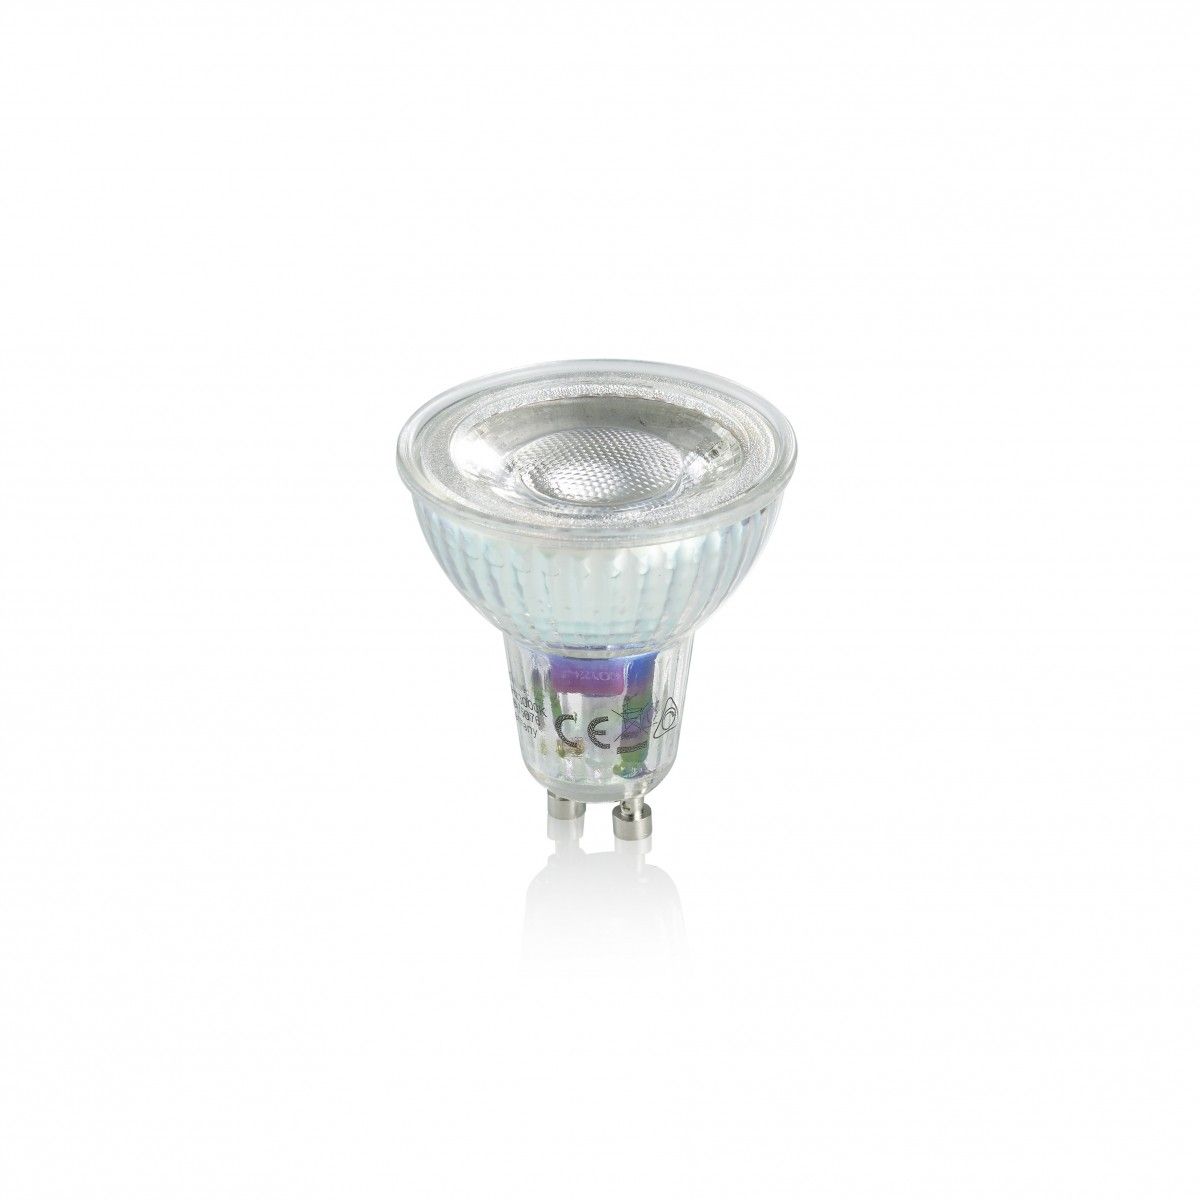 Trio 956-5936 LED bodová žárovka Reflektor 1x5W | GU10 | 400lm | 3000K - stmívatelná, stříbrná - Dekolamp s.r.o.